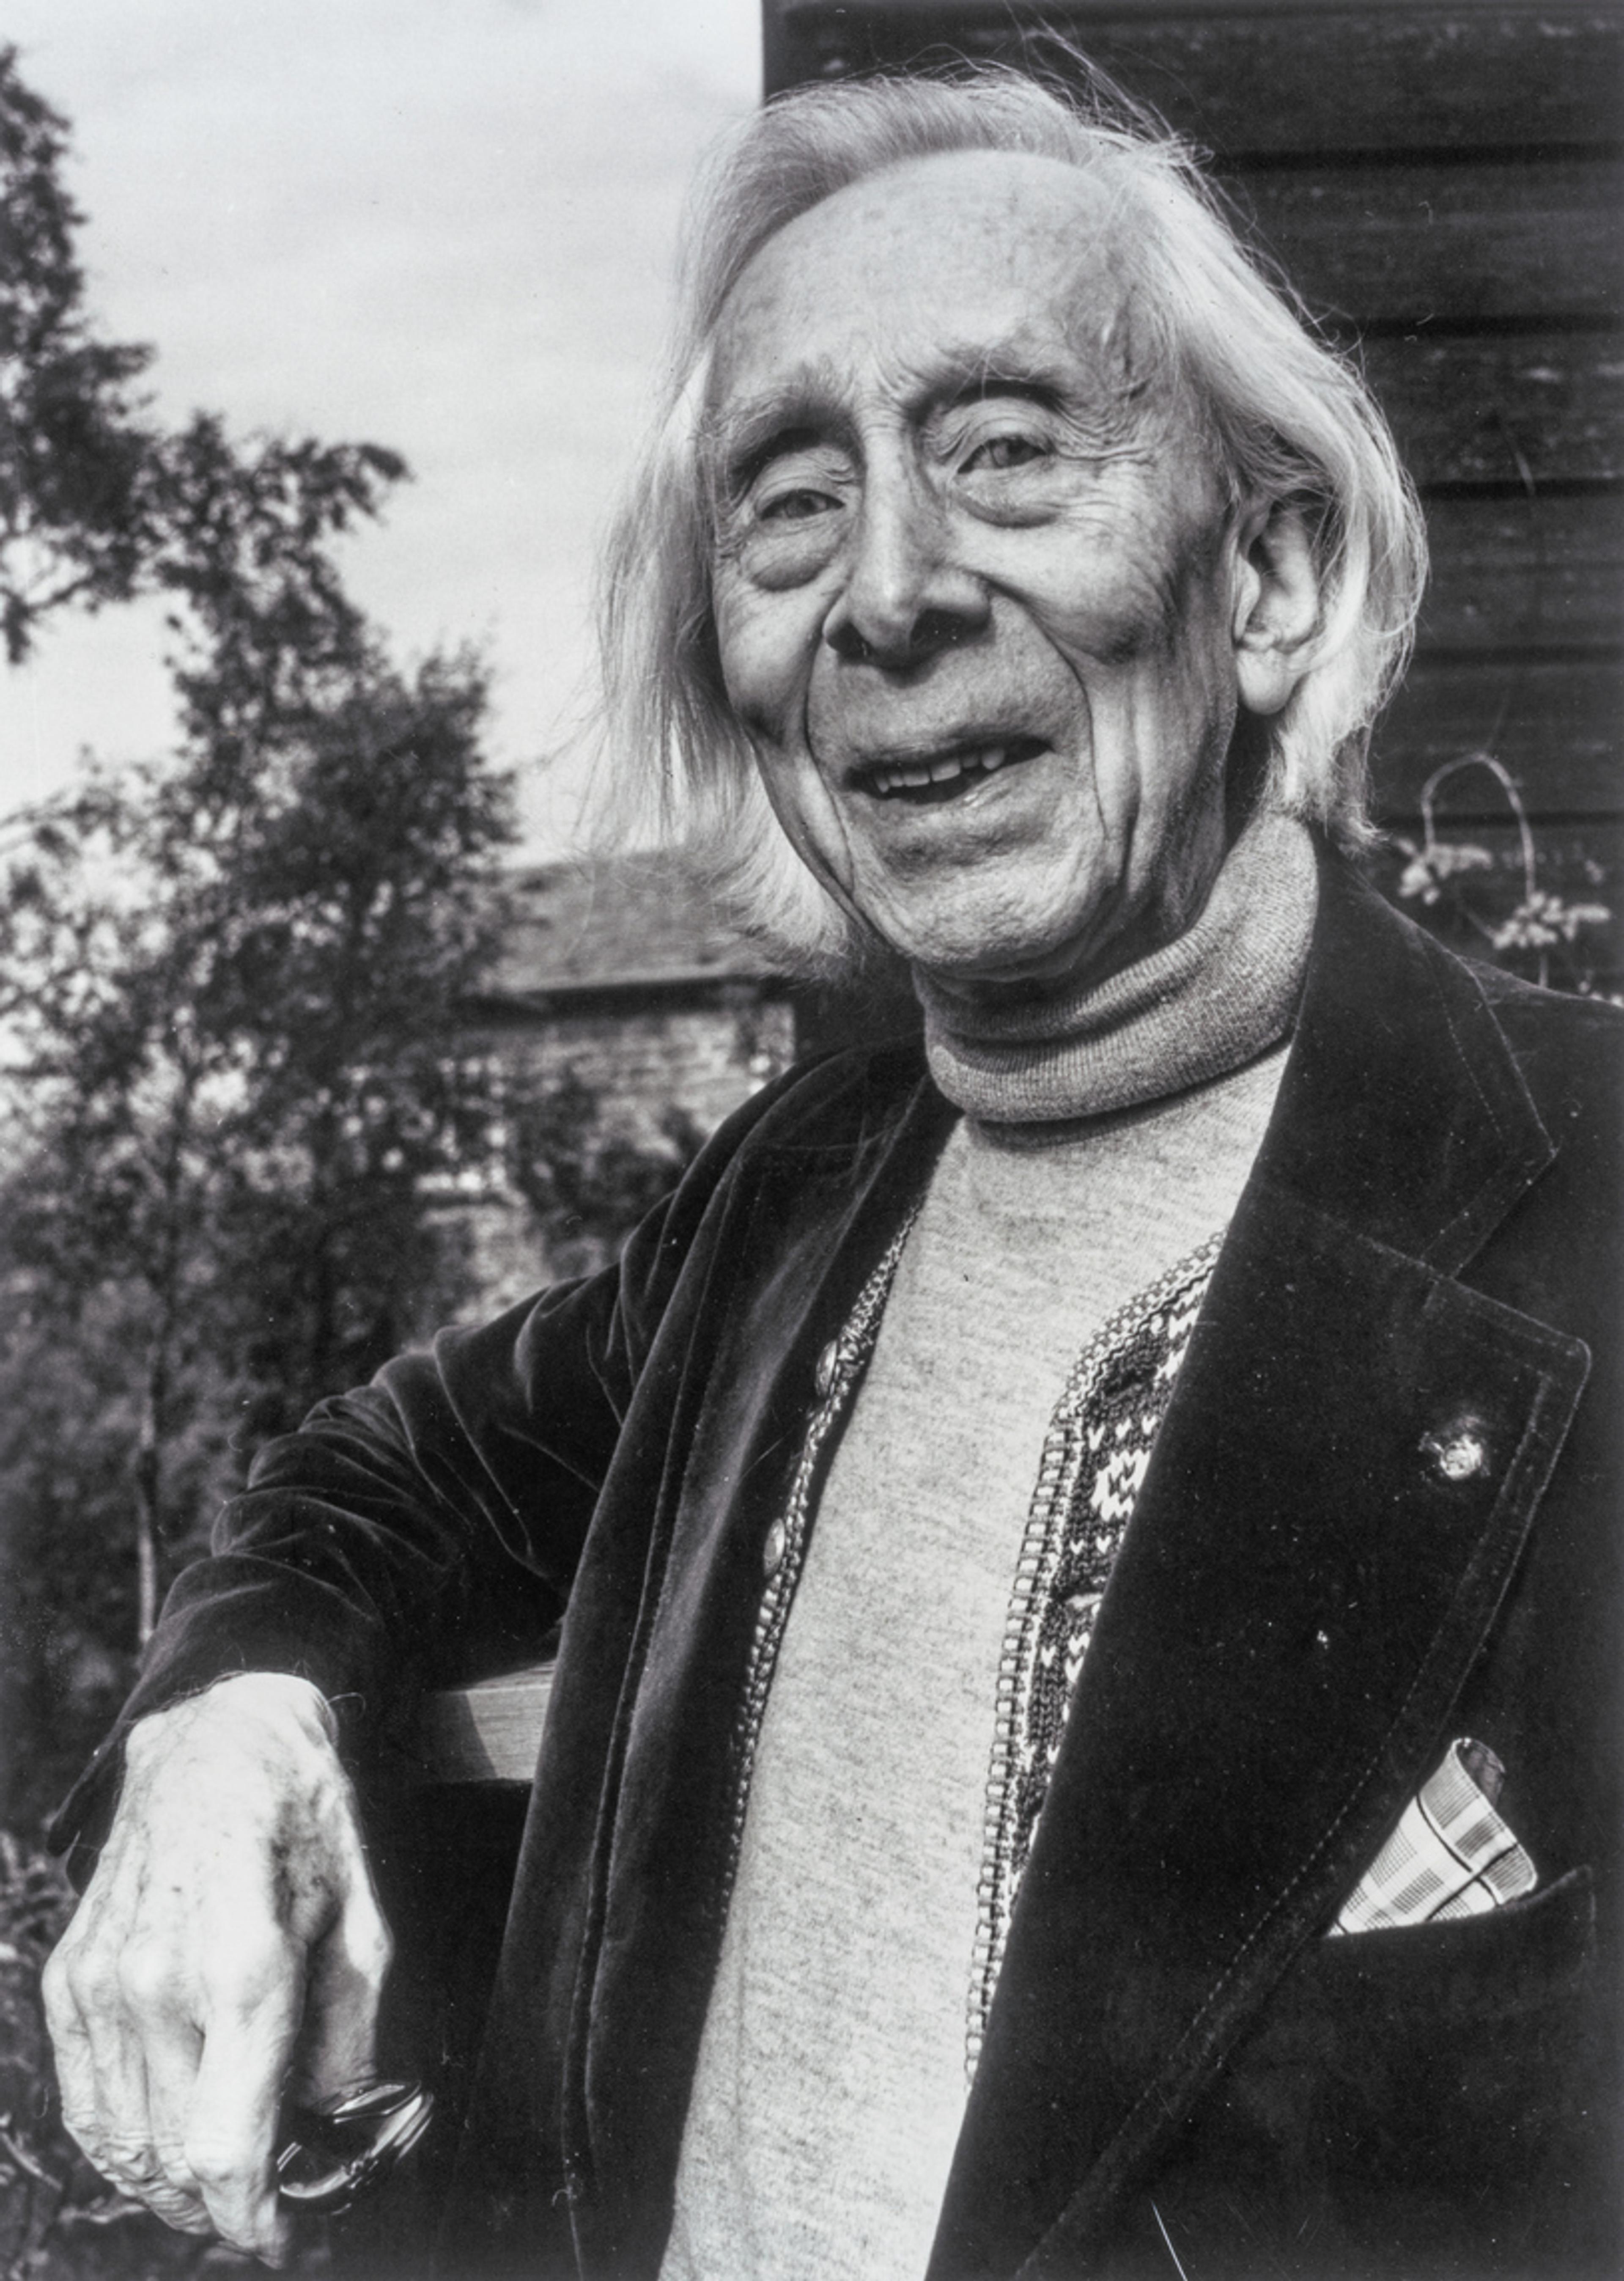 Portrett av Harald Sæverud i sort-hvitt. Han lener seg mot et rekkverk og smiler mot kamera.